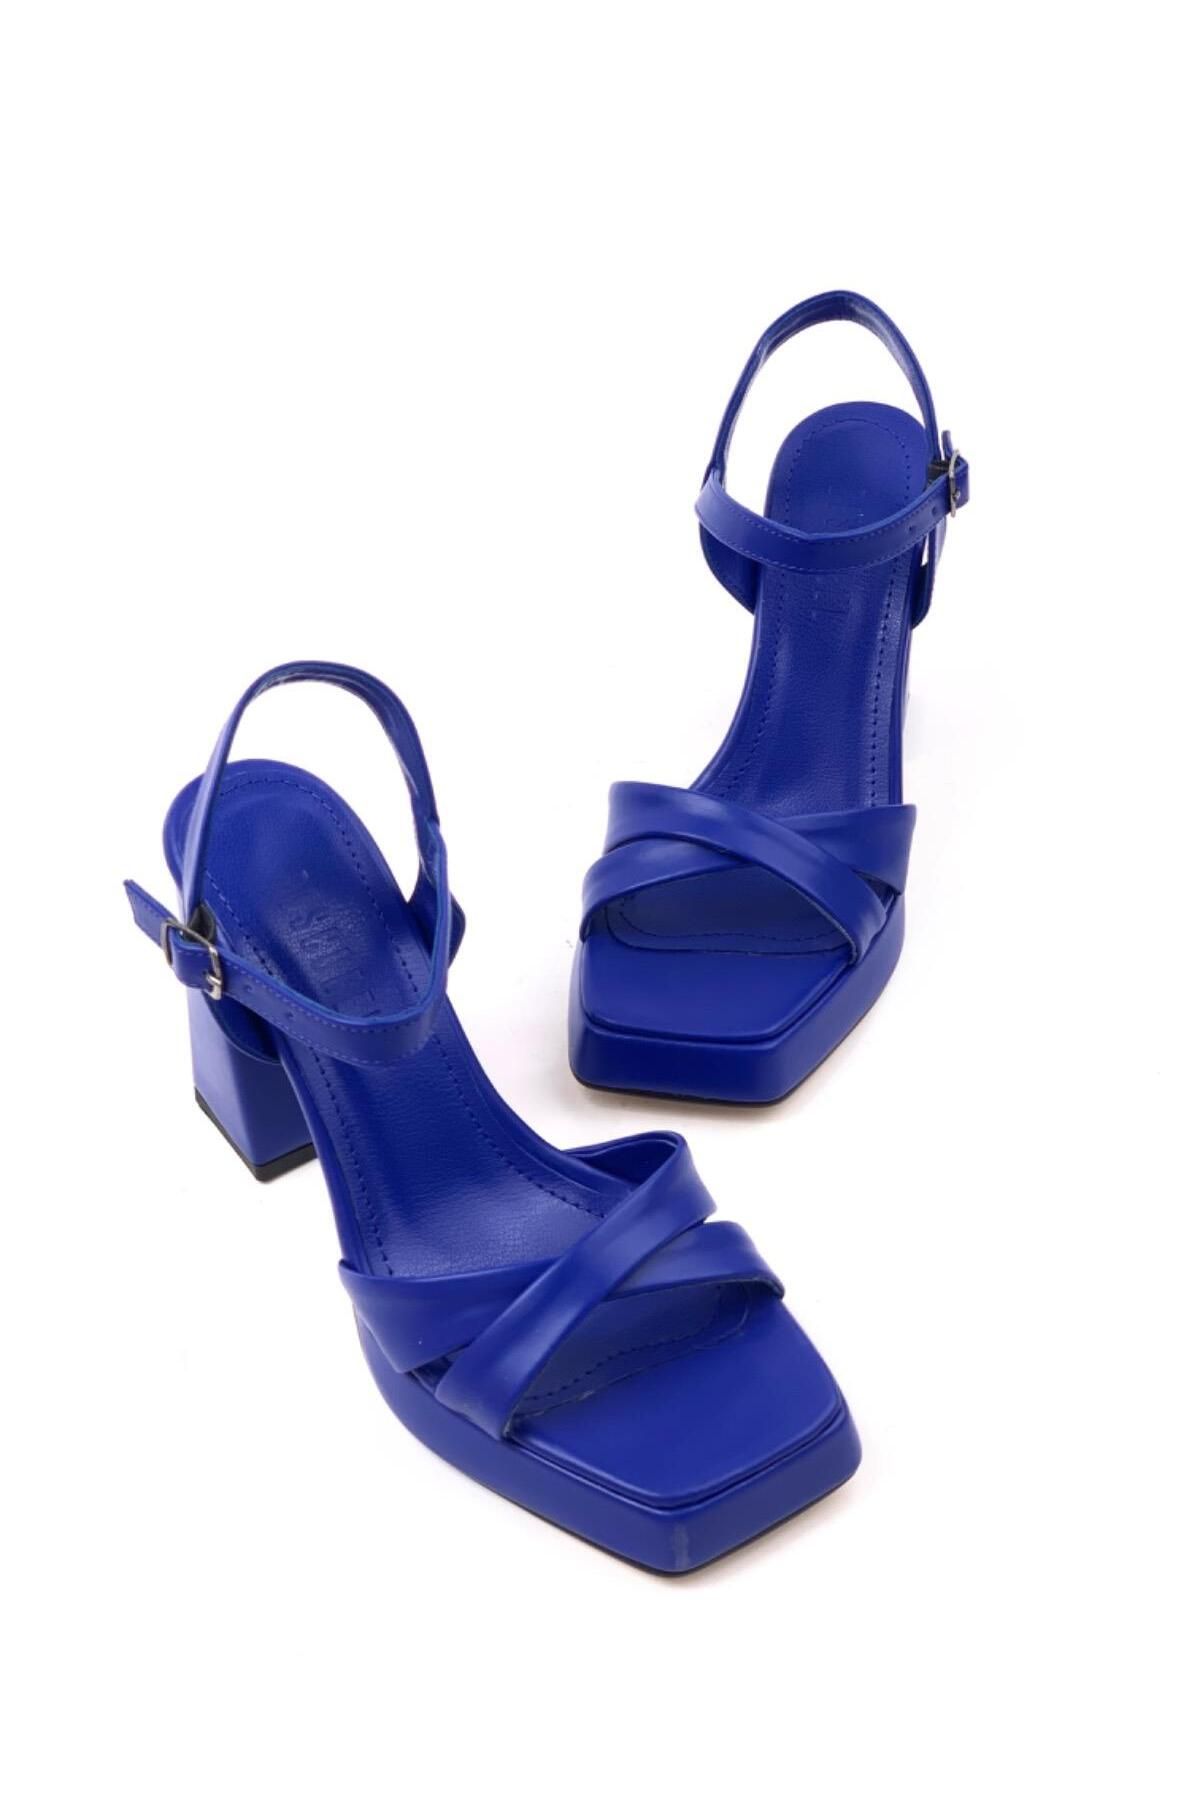 mayahobby Kadın Rosd Mavi Tek Platform Yüksek Topuk Çapraz Bantlı Ayakkabı Sandalet